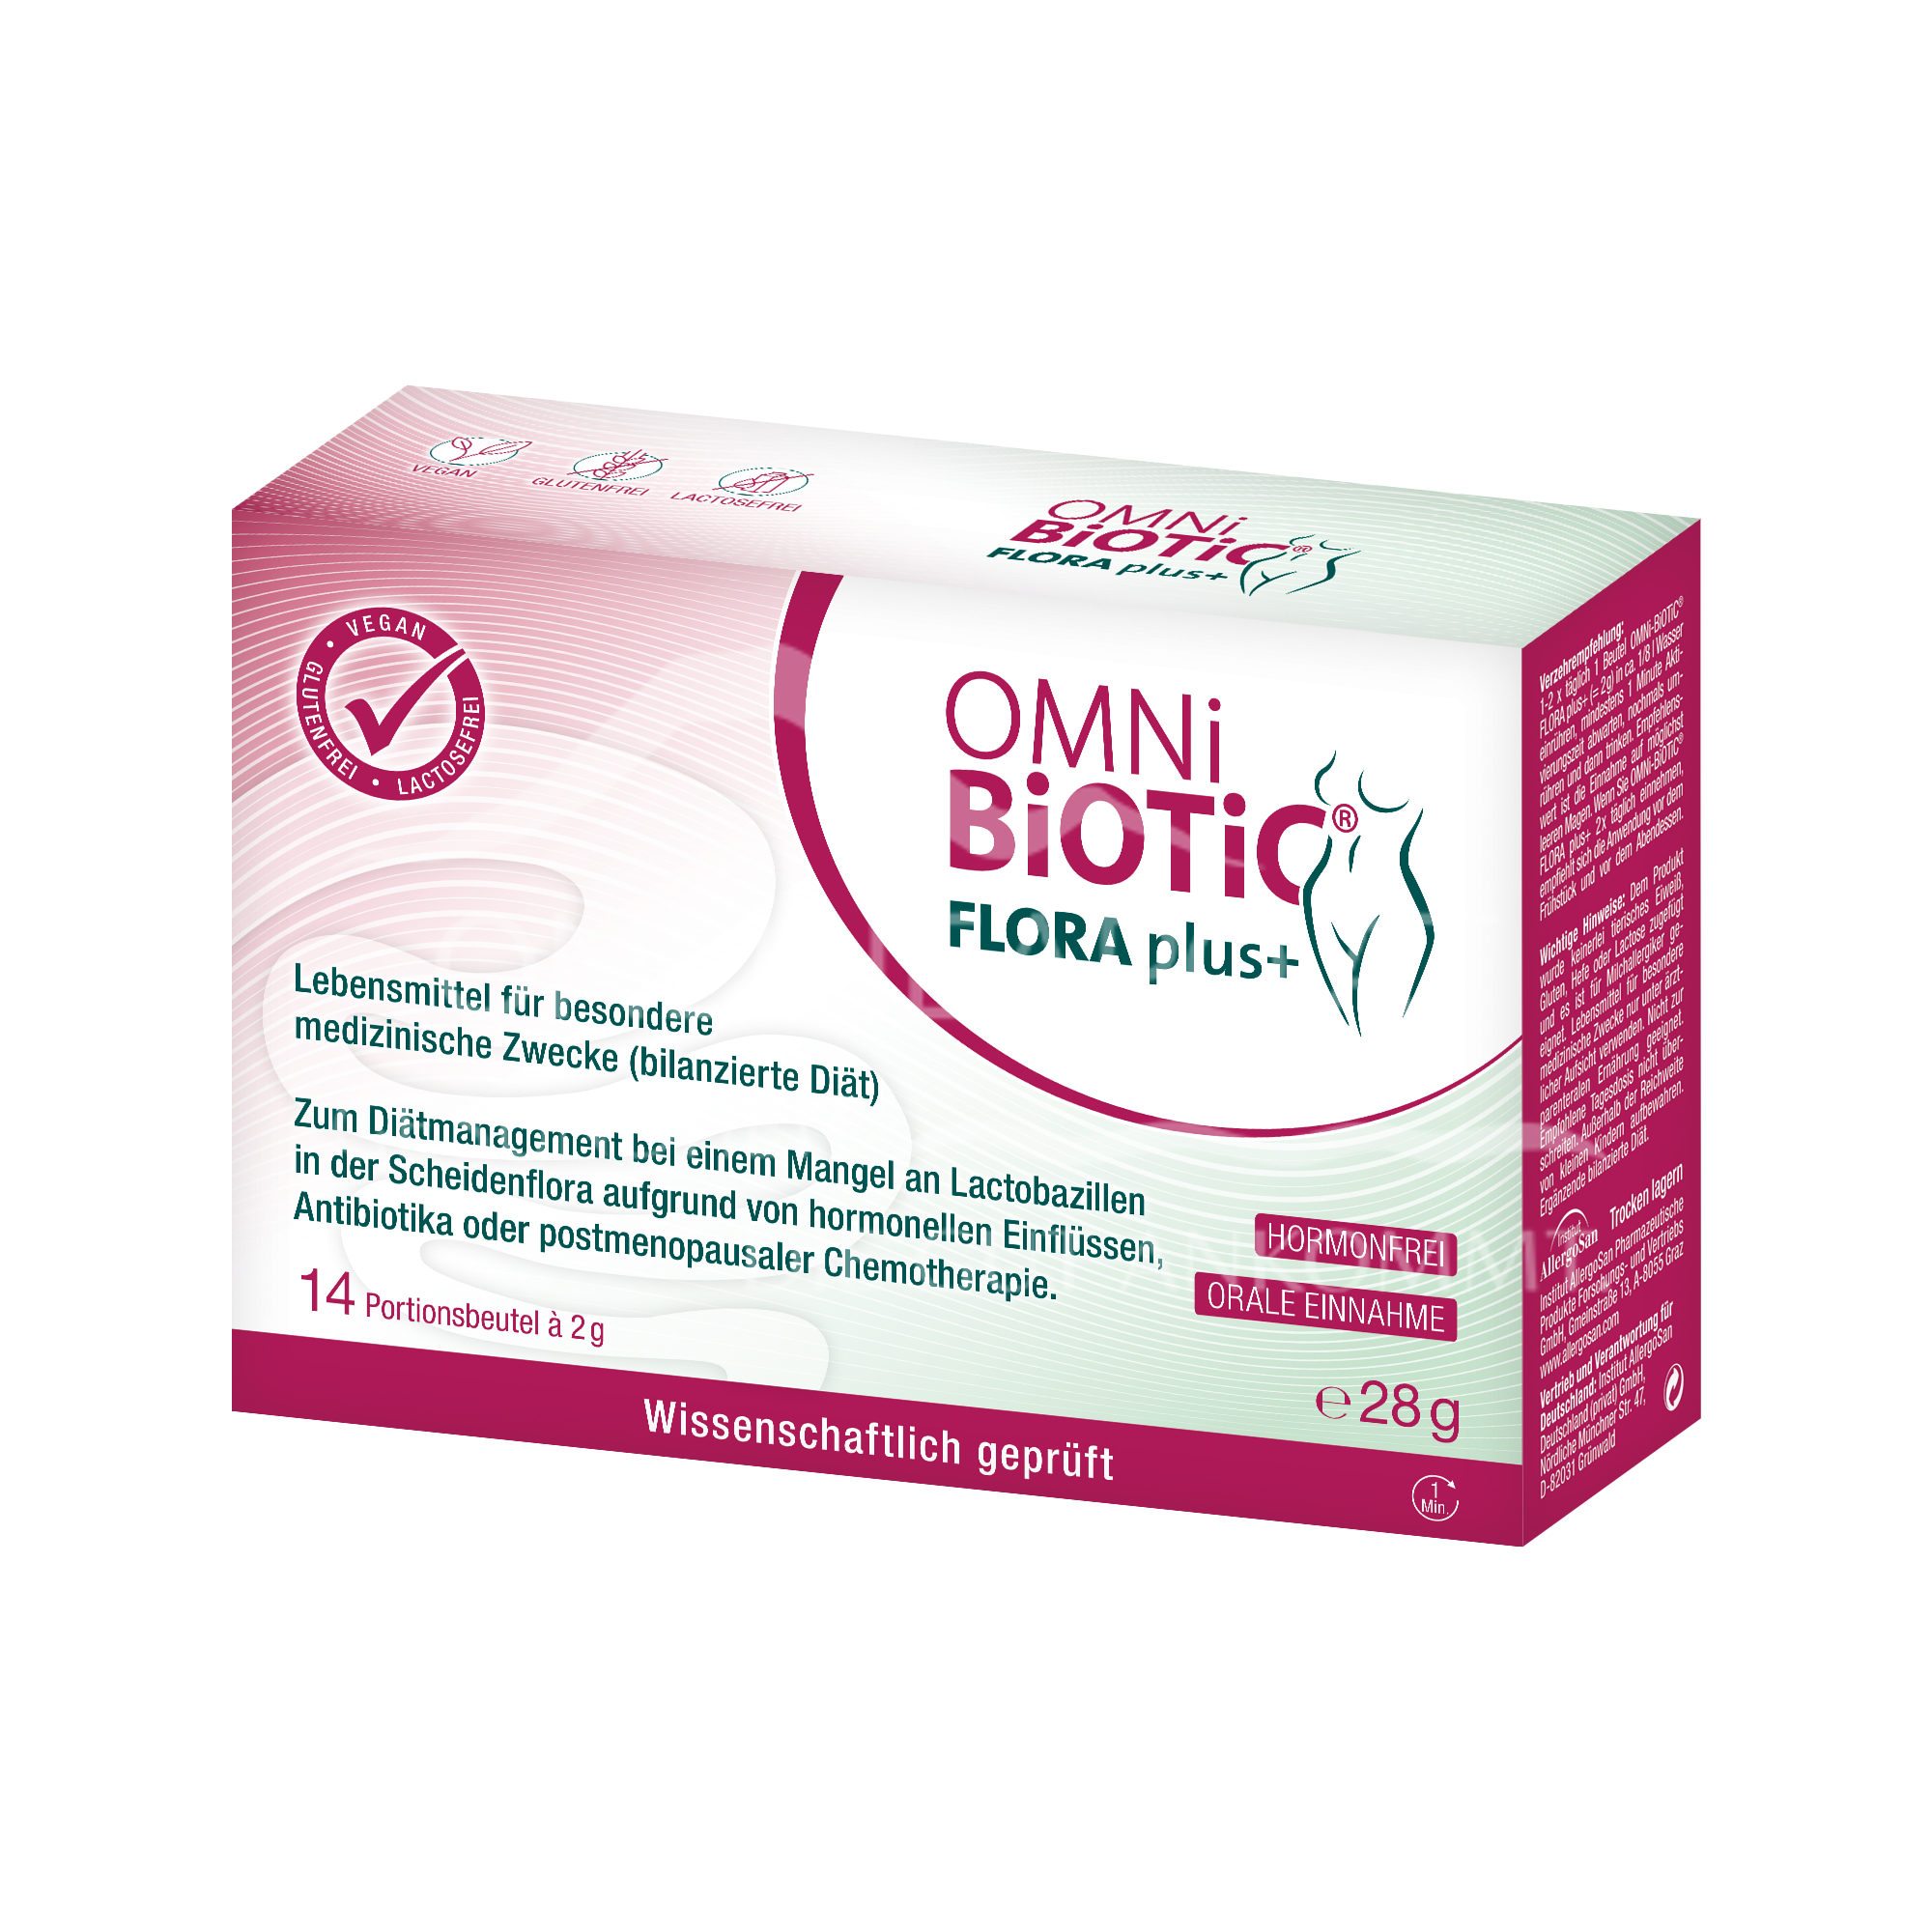 OMNi-BiOTiC® FLORA plus+ Sachets